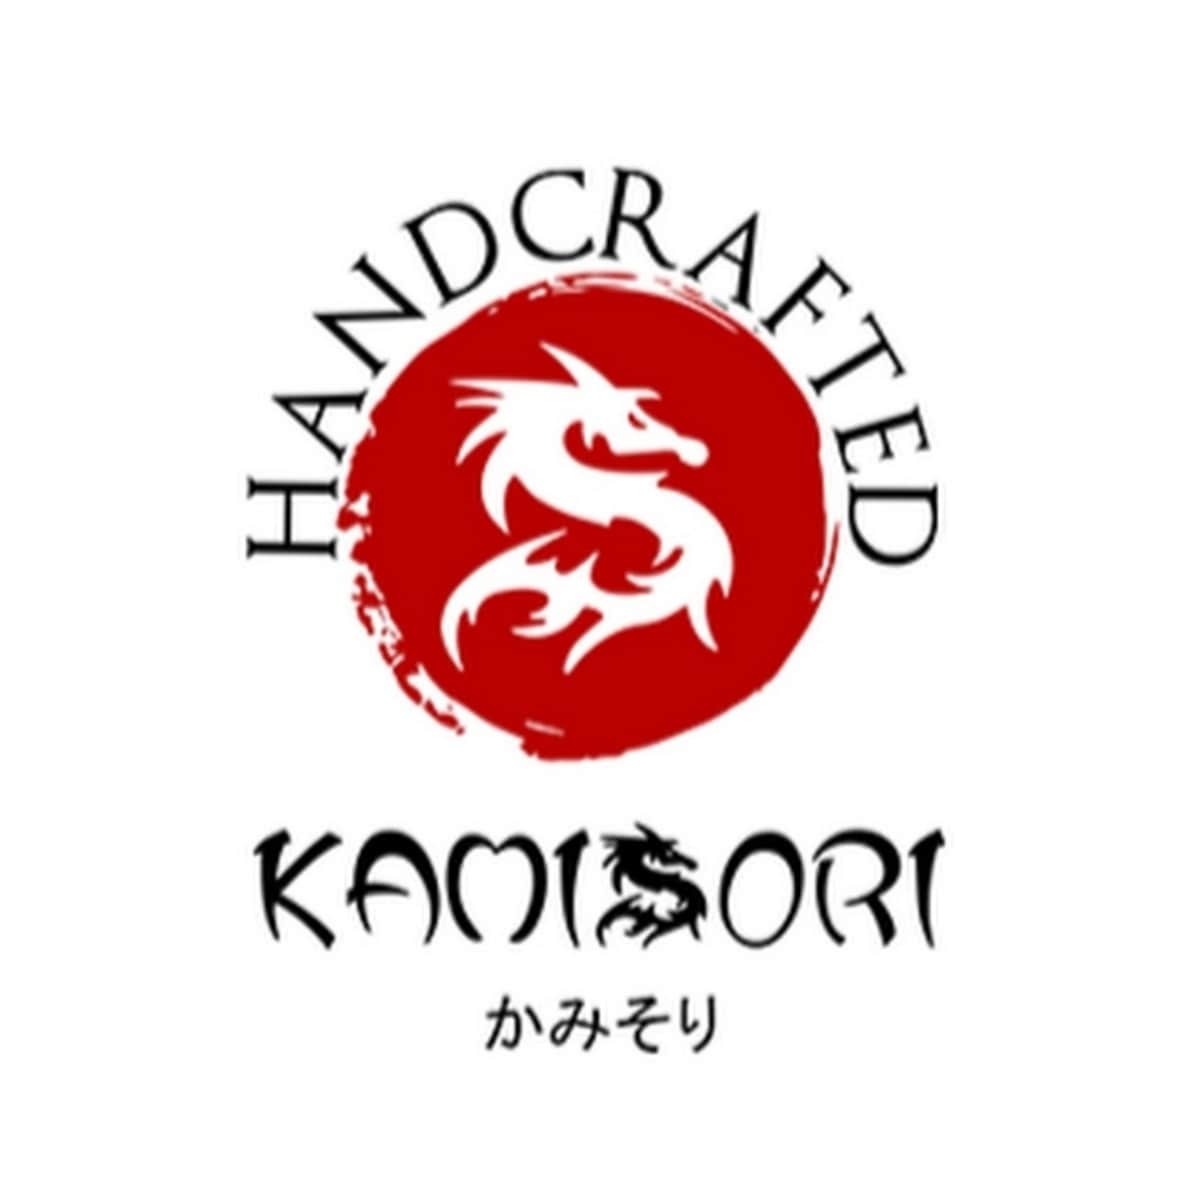 Kamisori Shears - Professional Japanese Hair Scissors logo